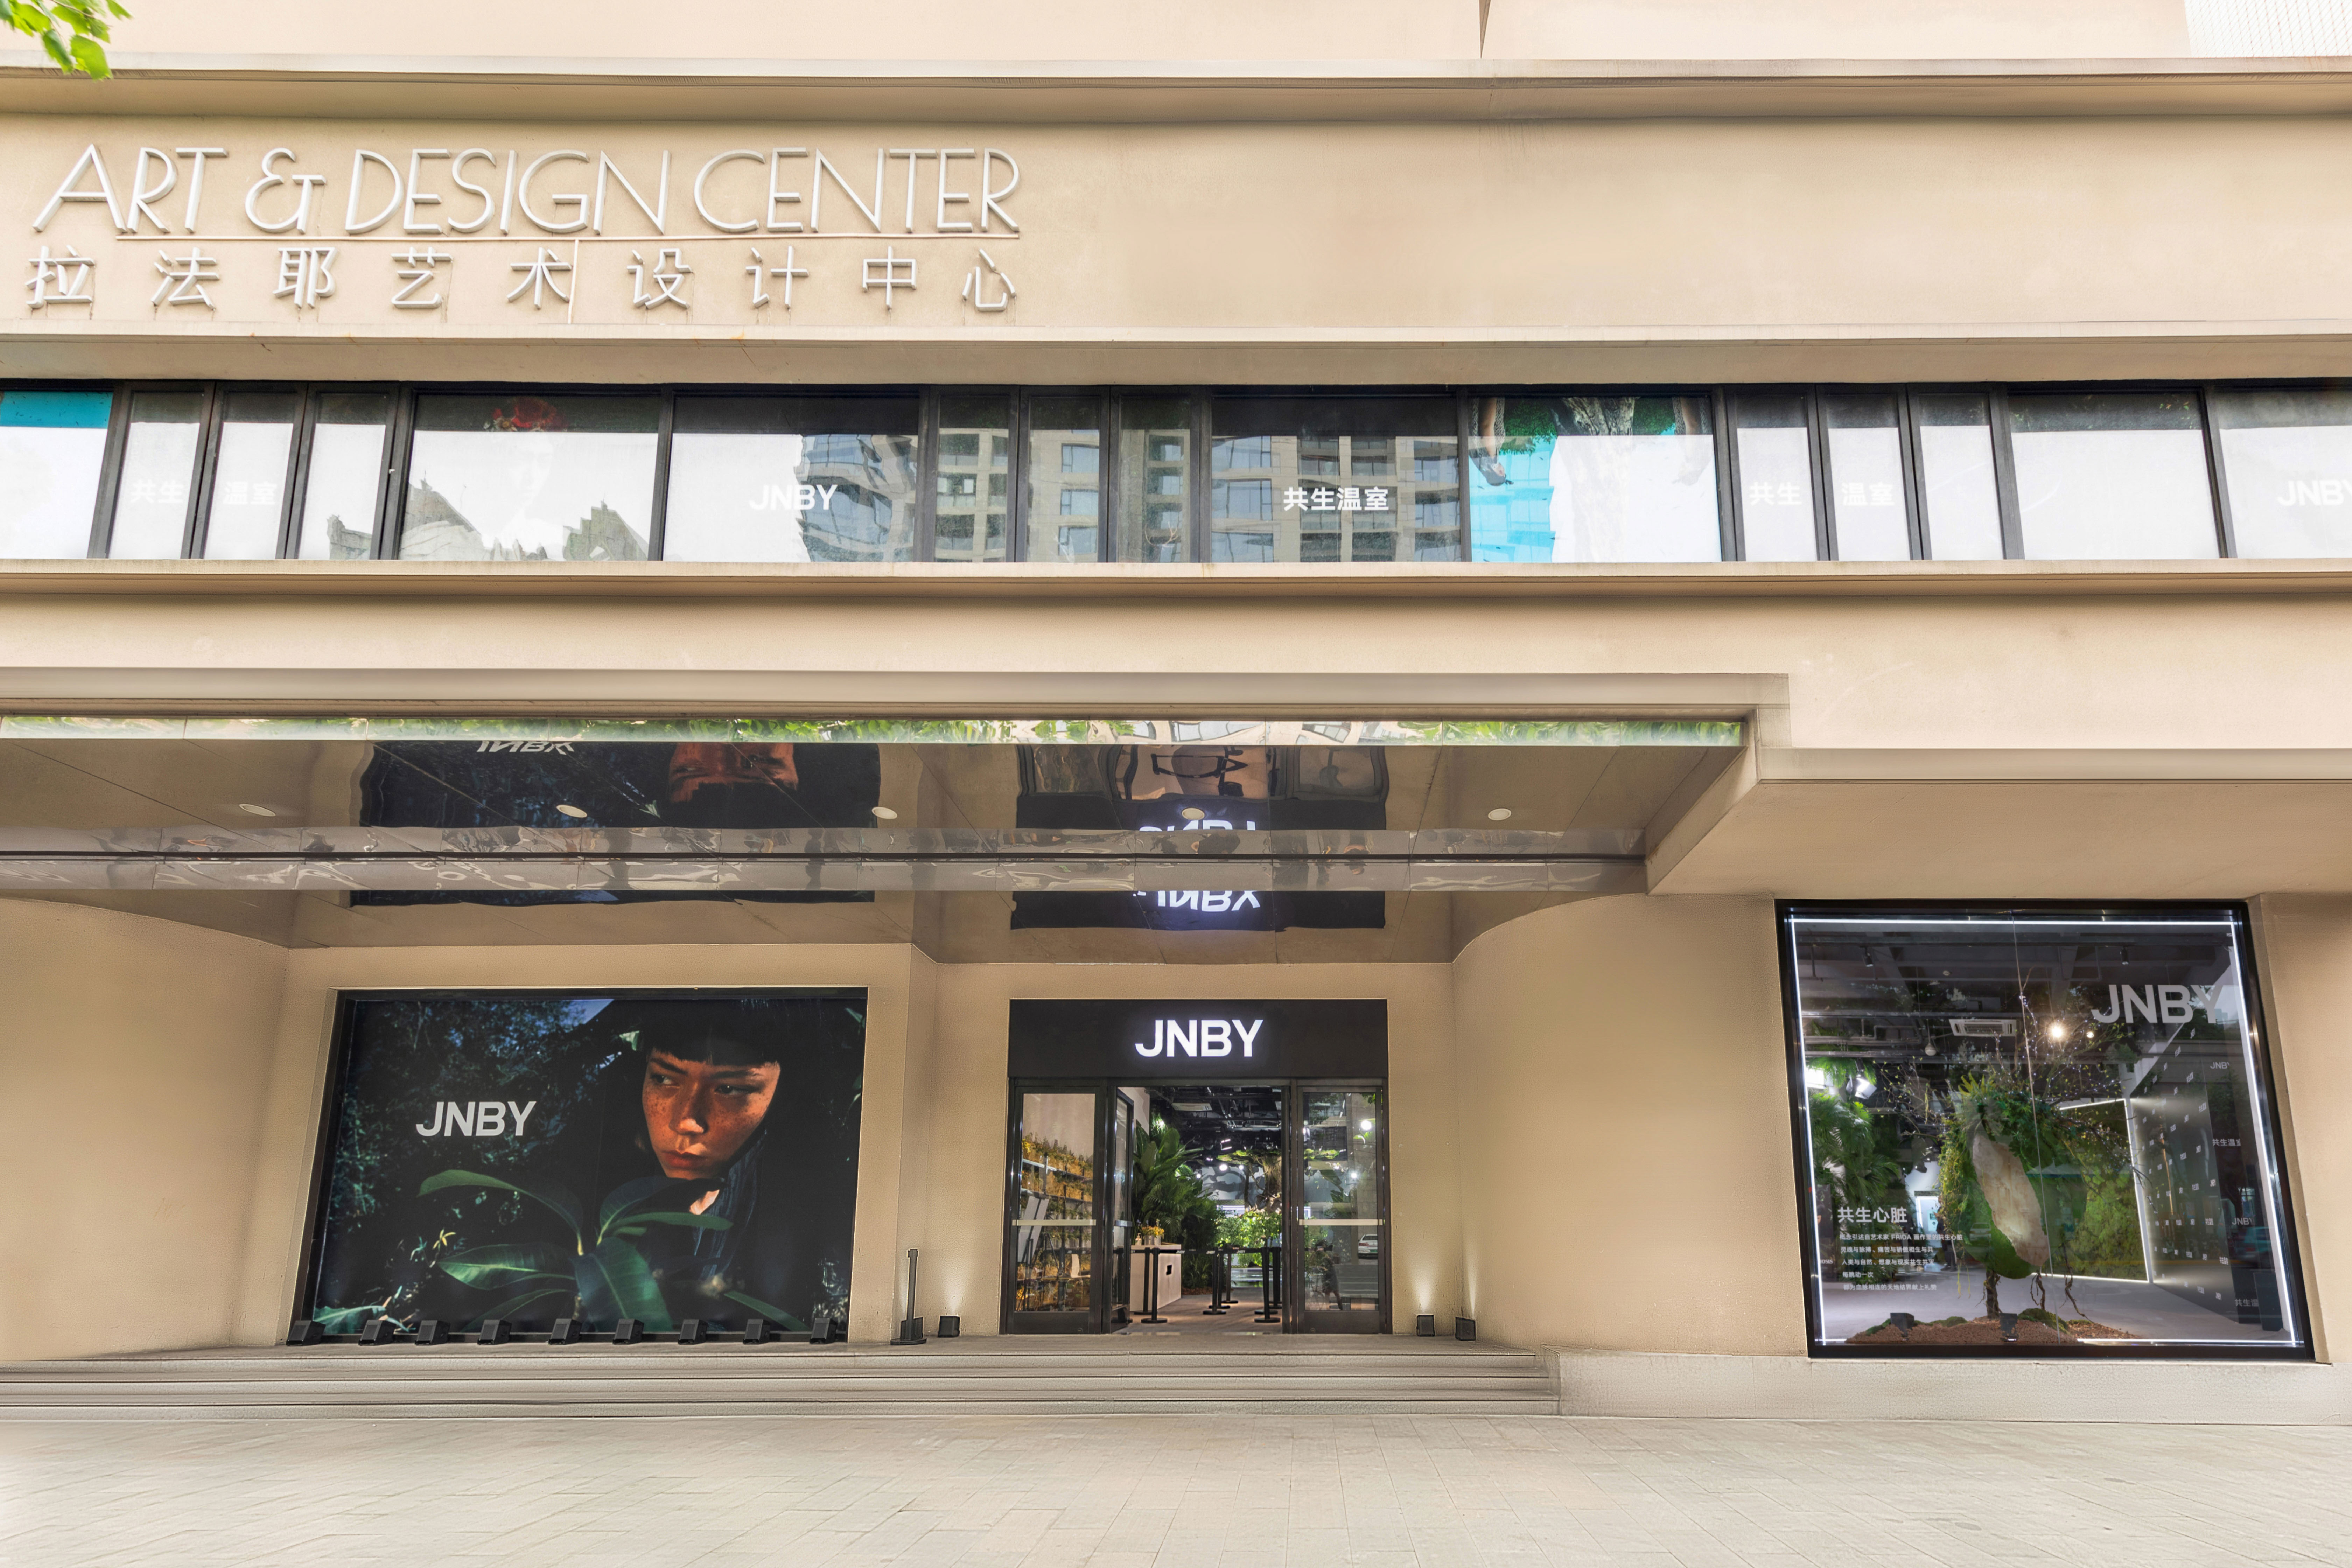 JNBY 2021“共生温室”快闪创意展开幕仪式启幕